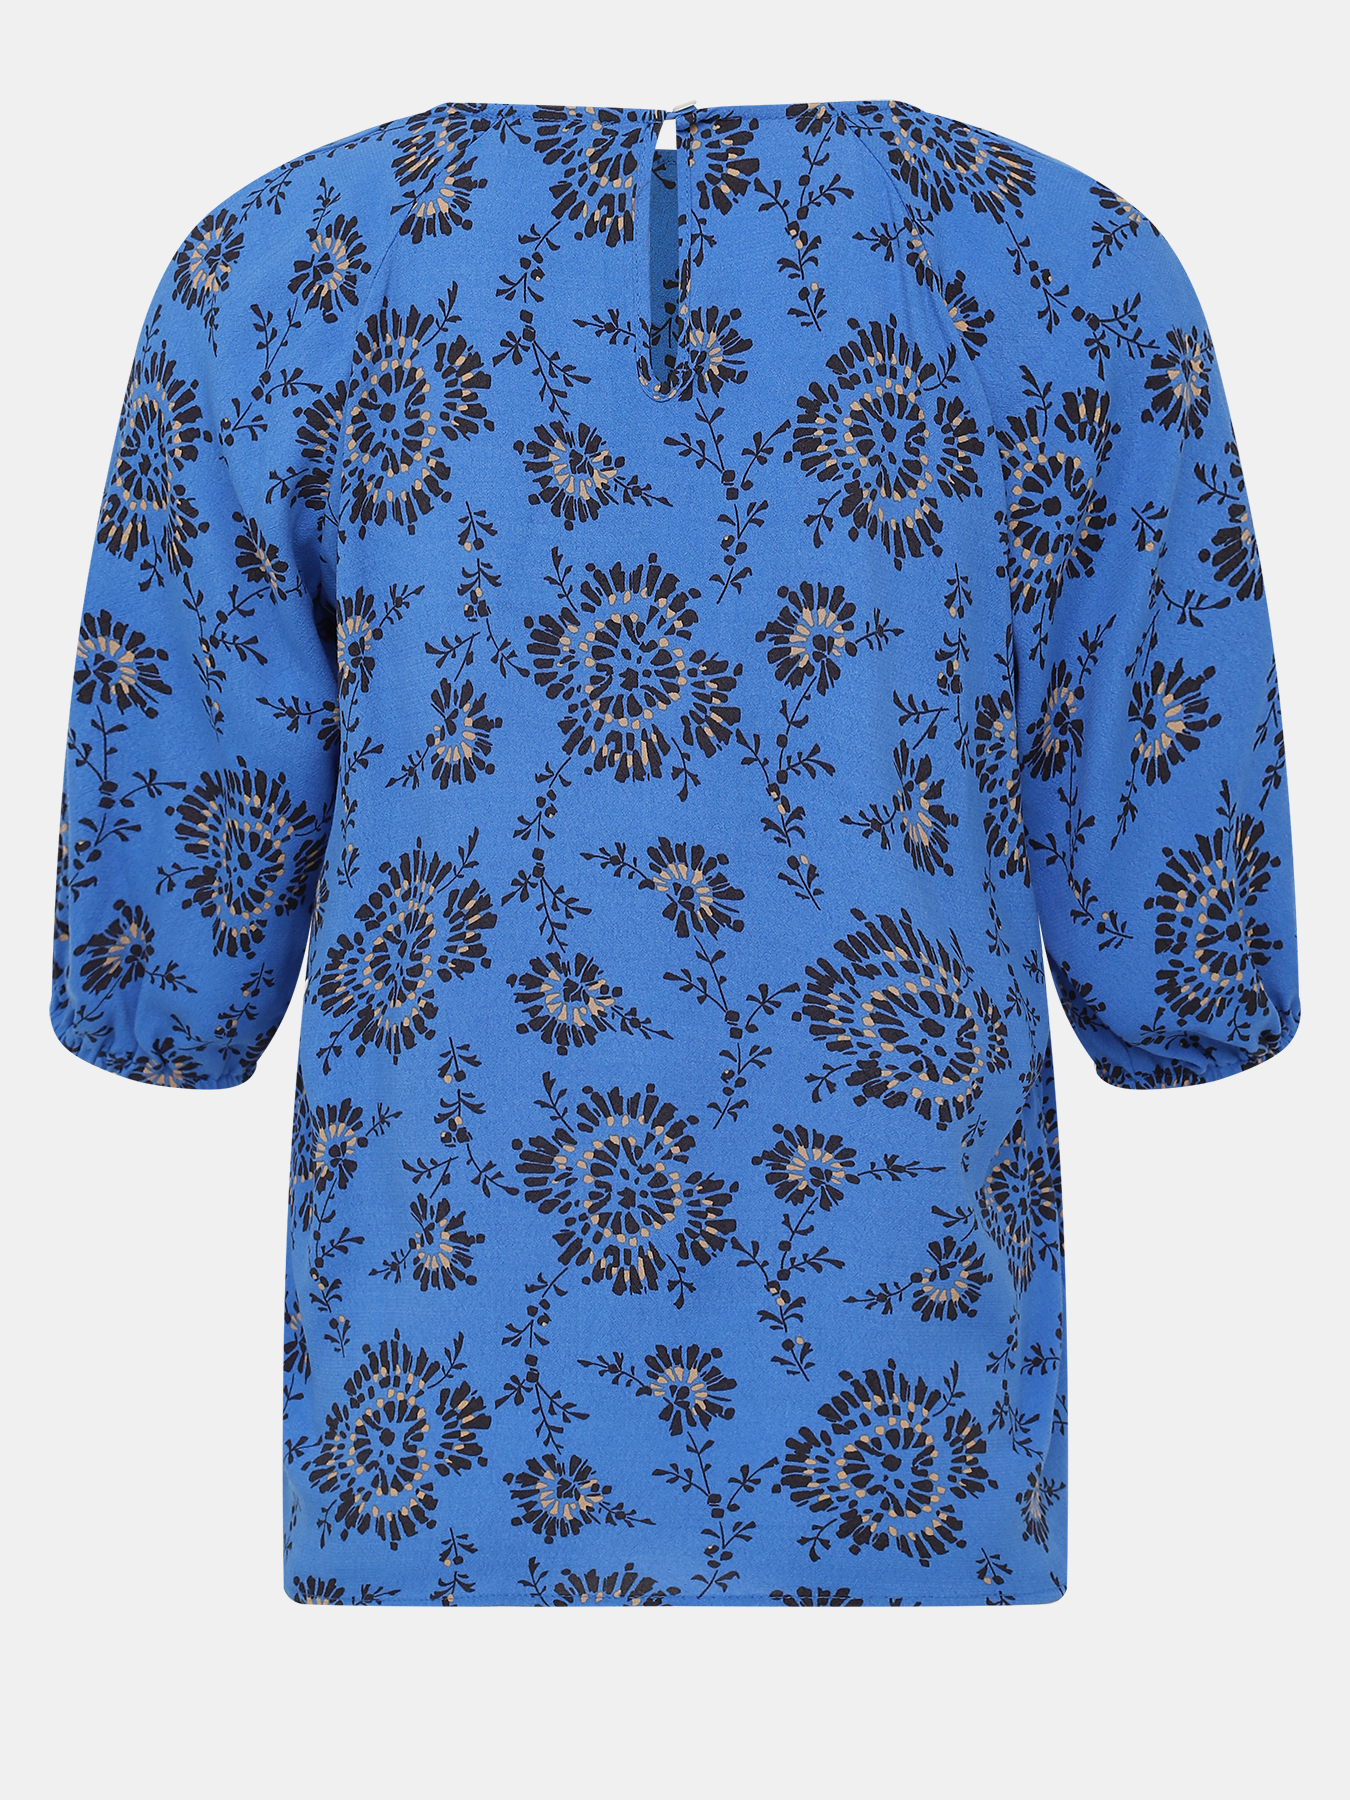 Блузка Emme Marella 422845-023, цвет синий, размер 46 - фото 2